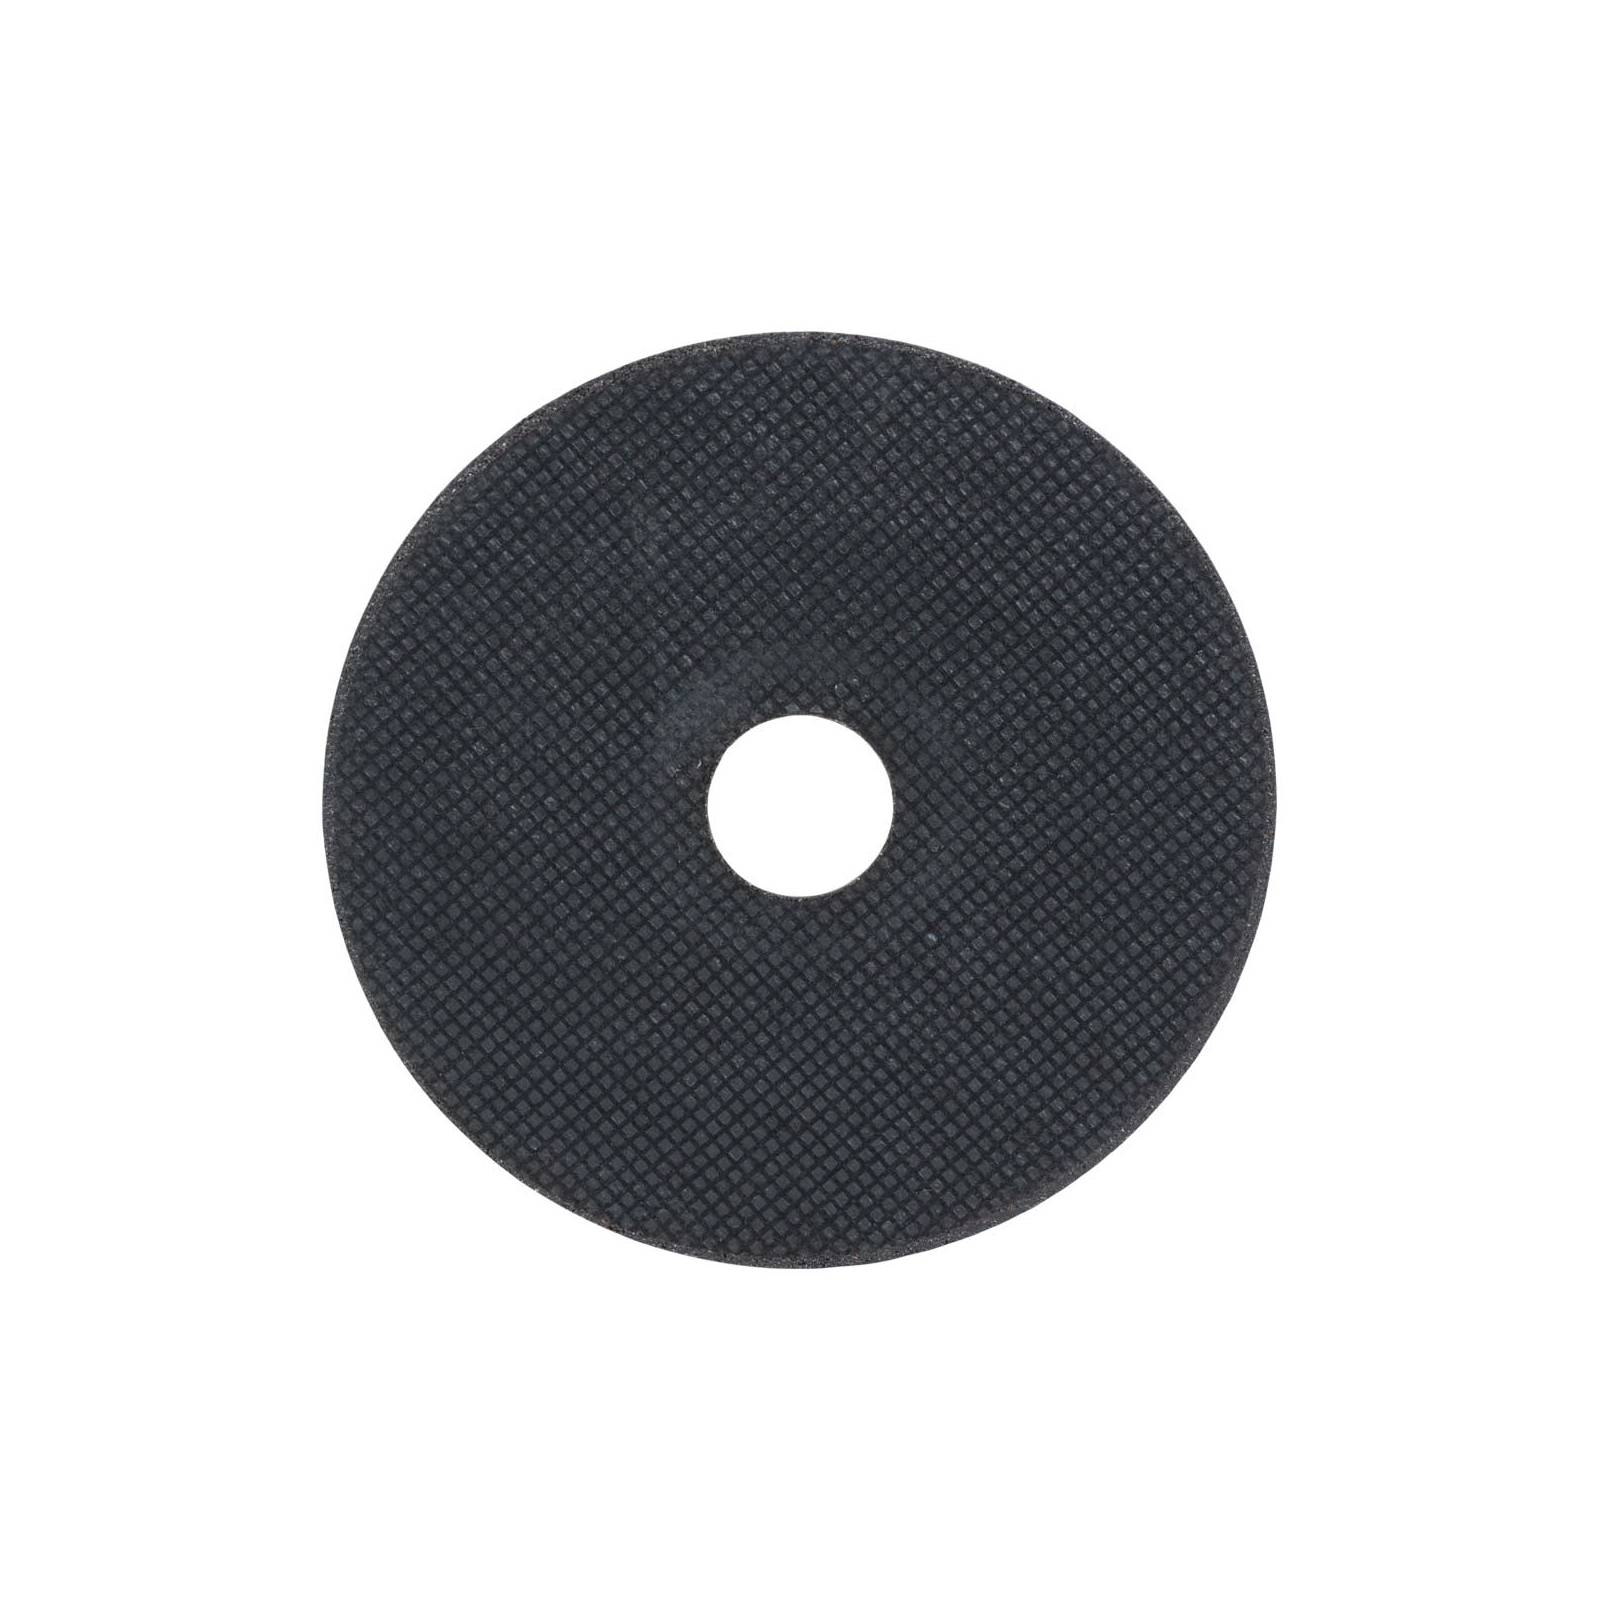 Круг отрезной Sigma по металлу и нержавеющей стали 115x1.0x22.2мм, 13300об/мин (1940001) изображение 2